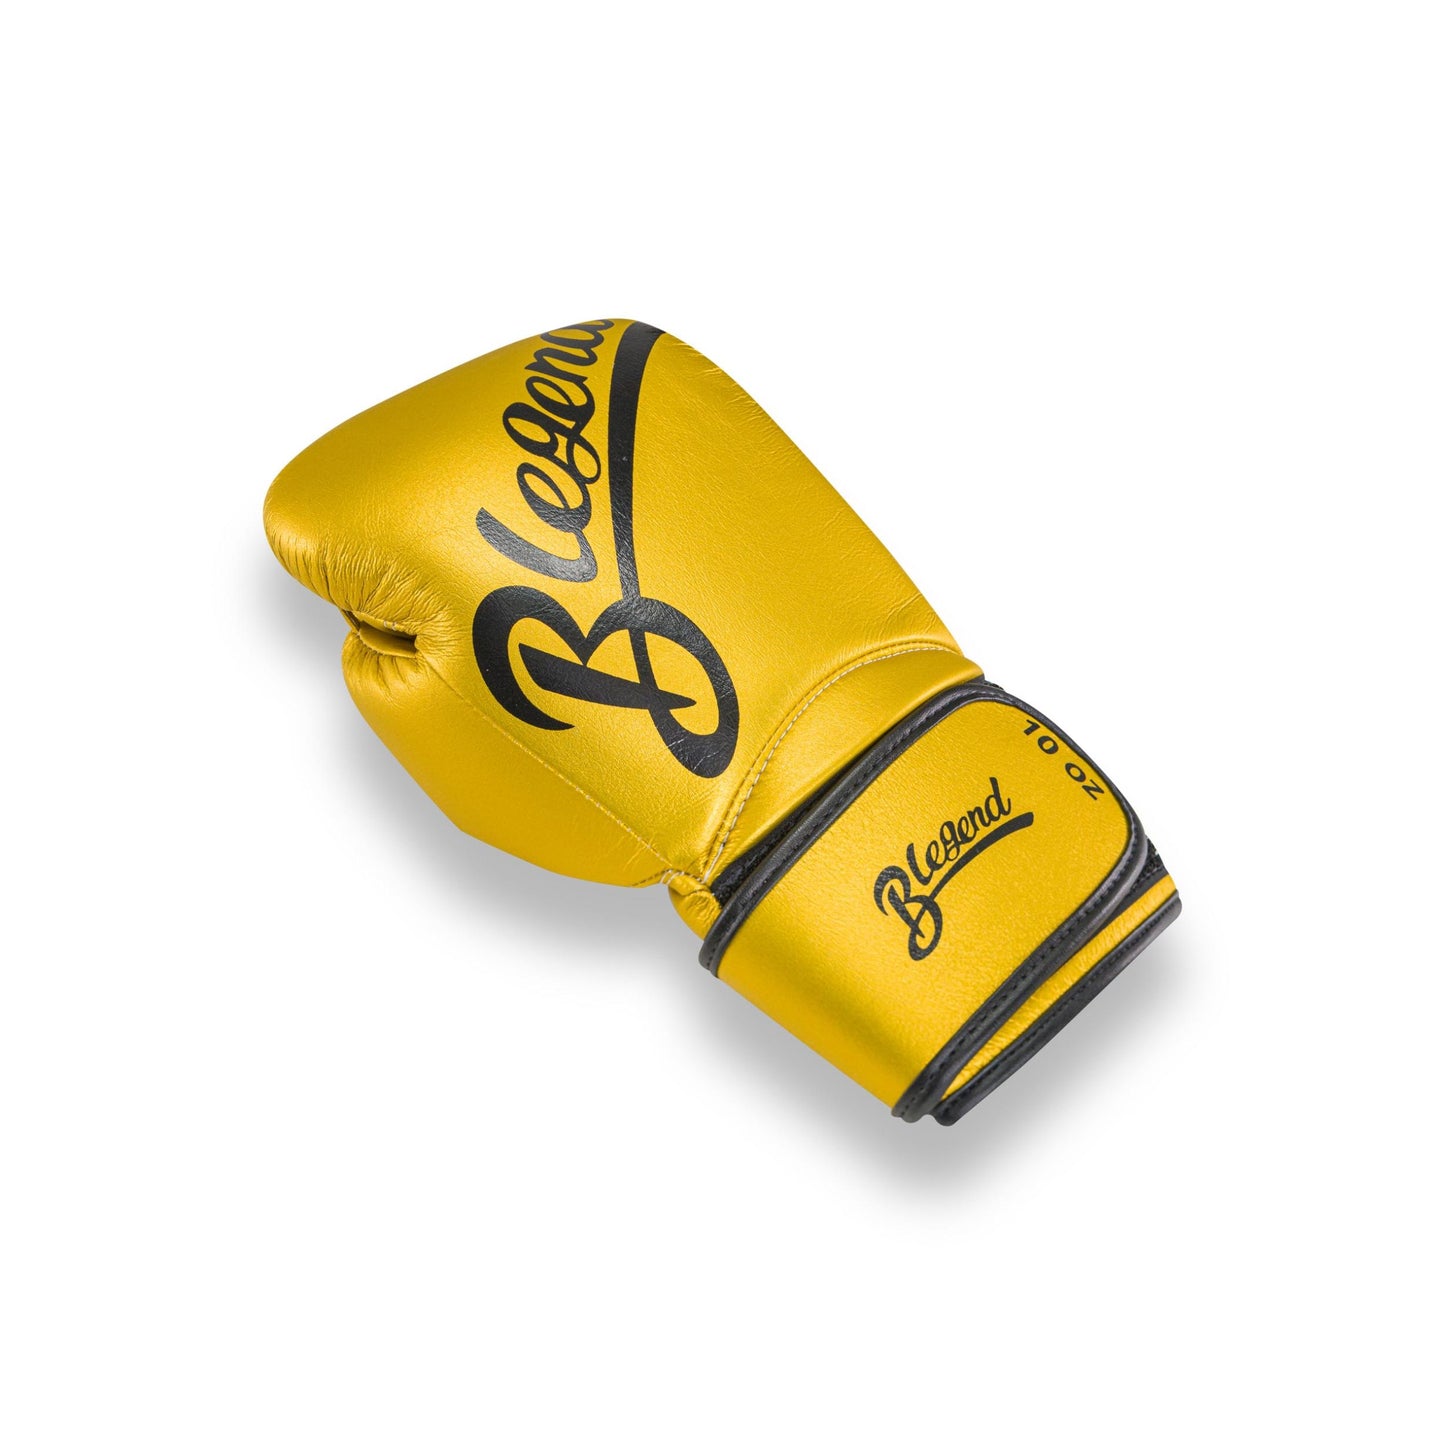 Blegend Boxing Gloves BGL32 Velcro Gold